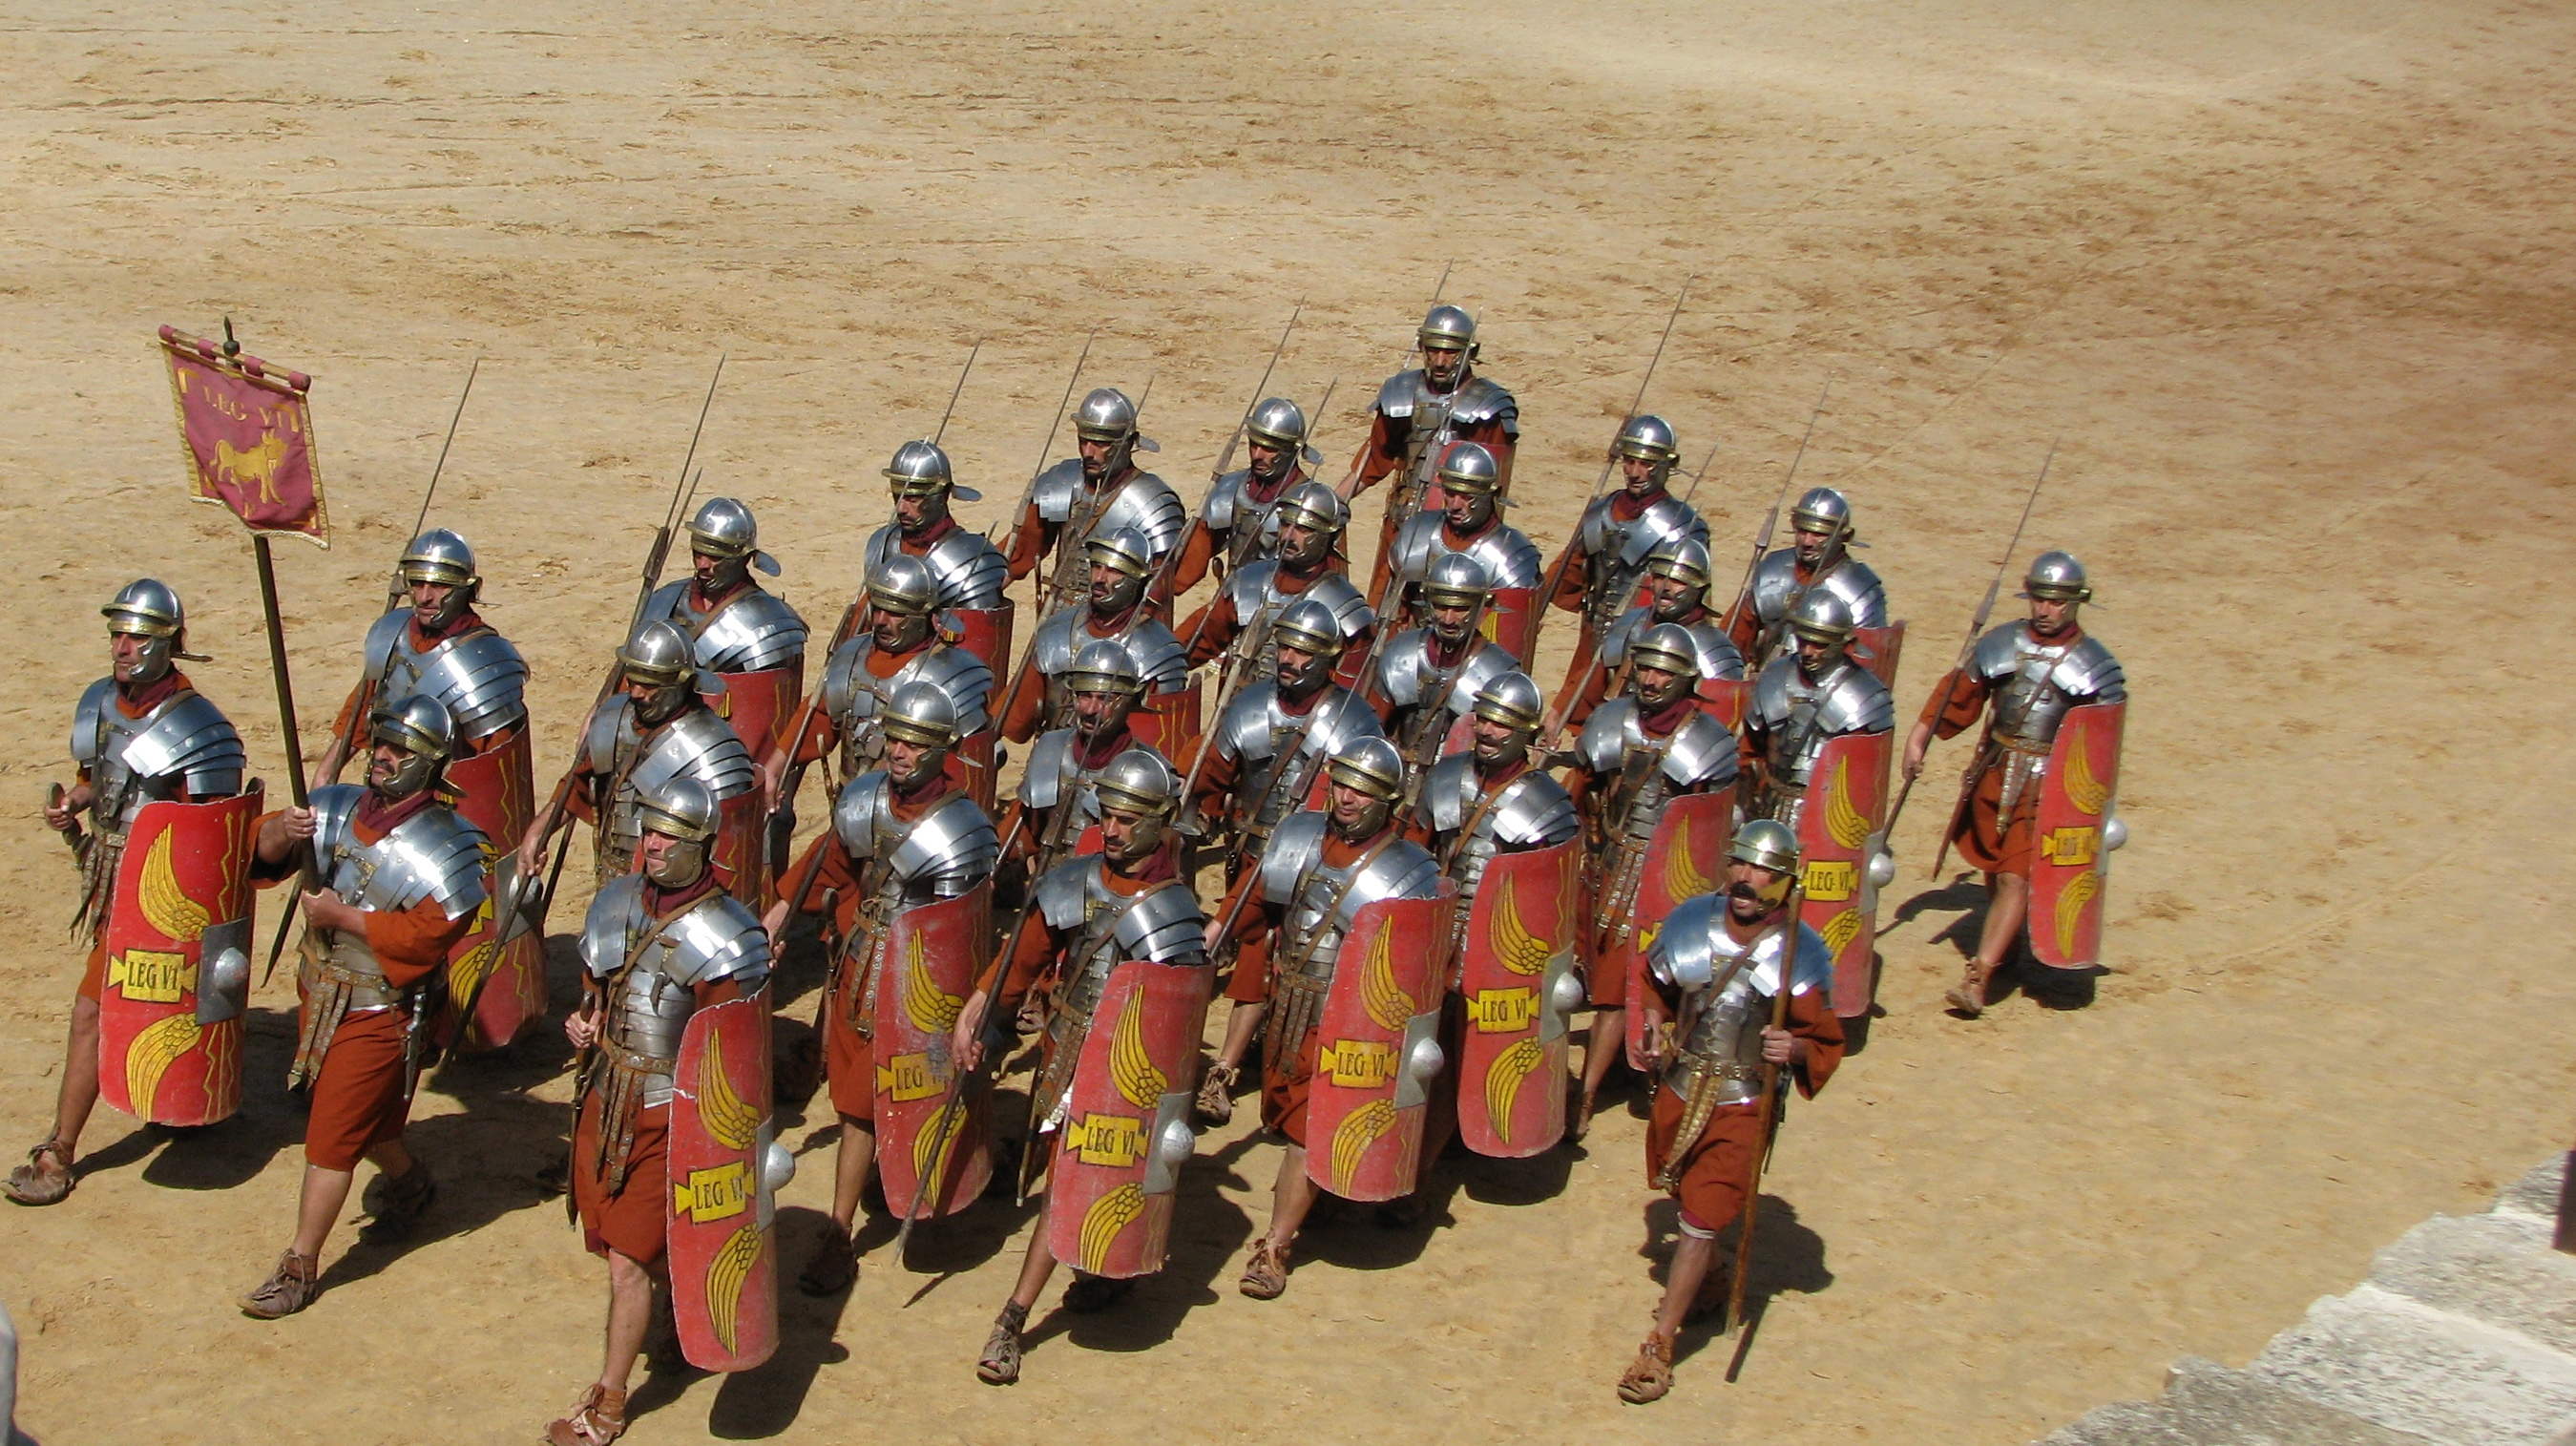 Что такое преторианец означает слово. Преторианская гвардия Рима. Римская Преторианская гвардия. Преторианская армия древнего Рима. Римский Преторианец.